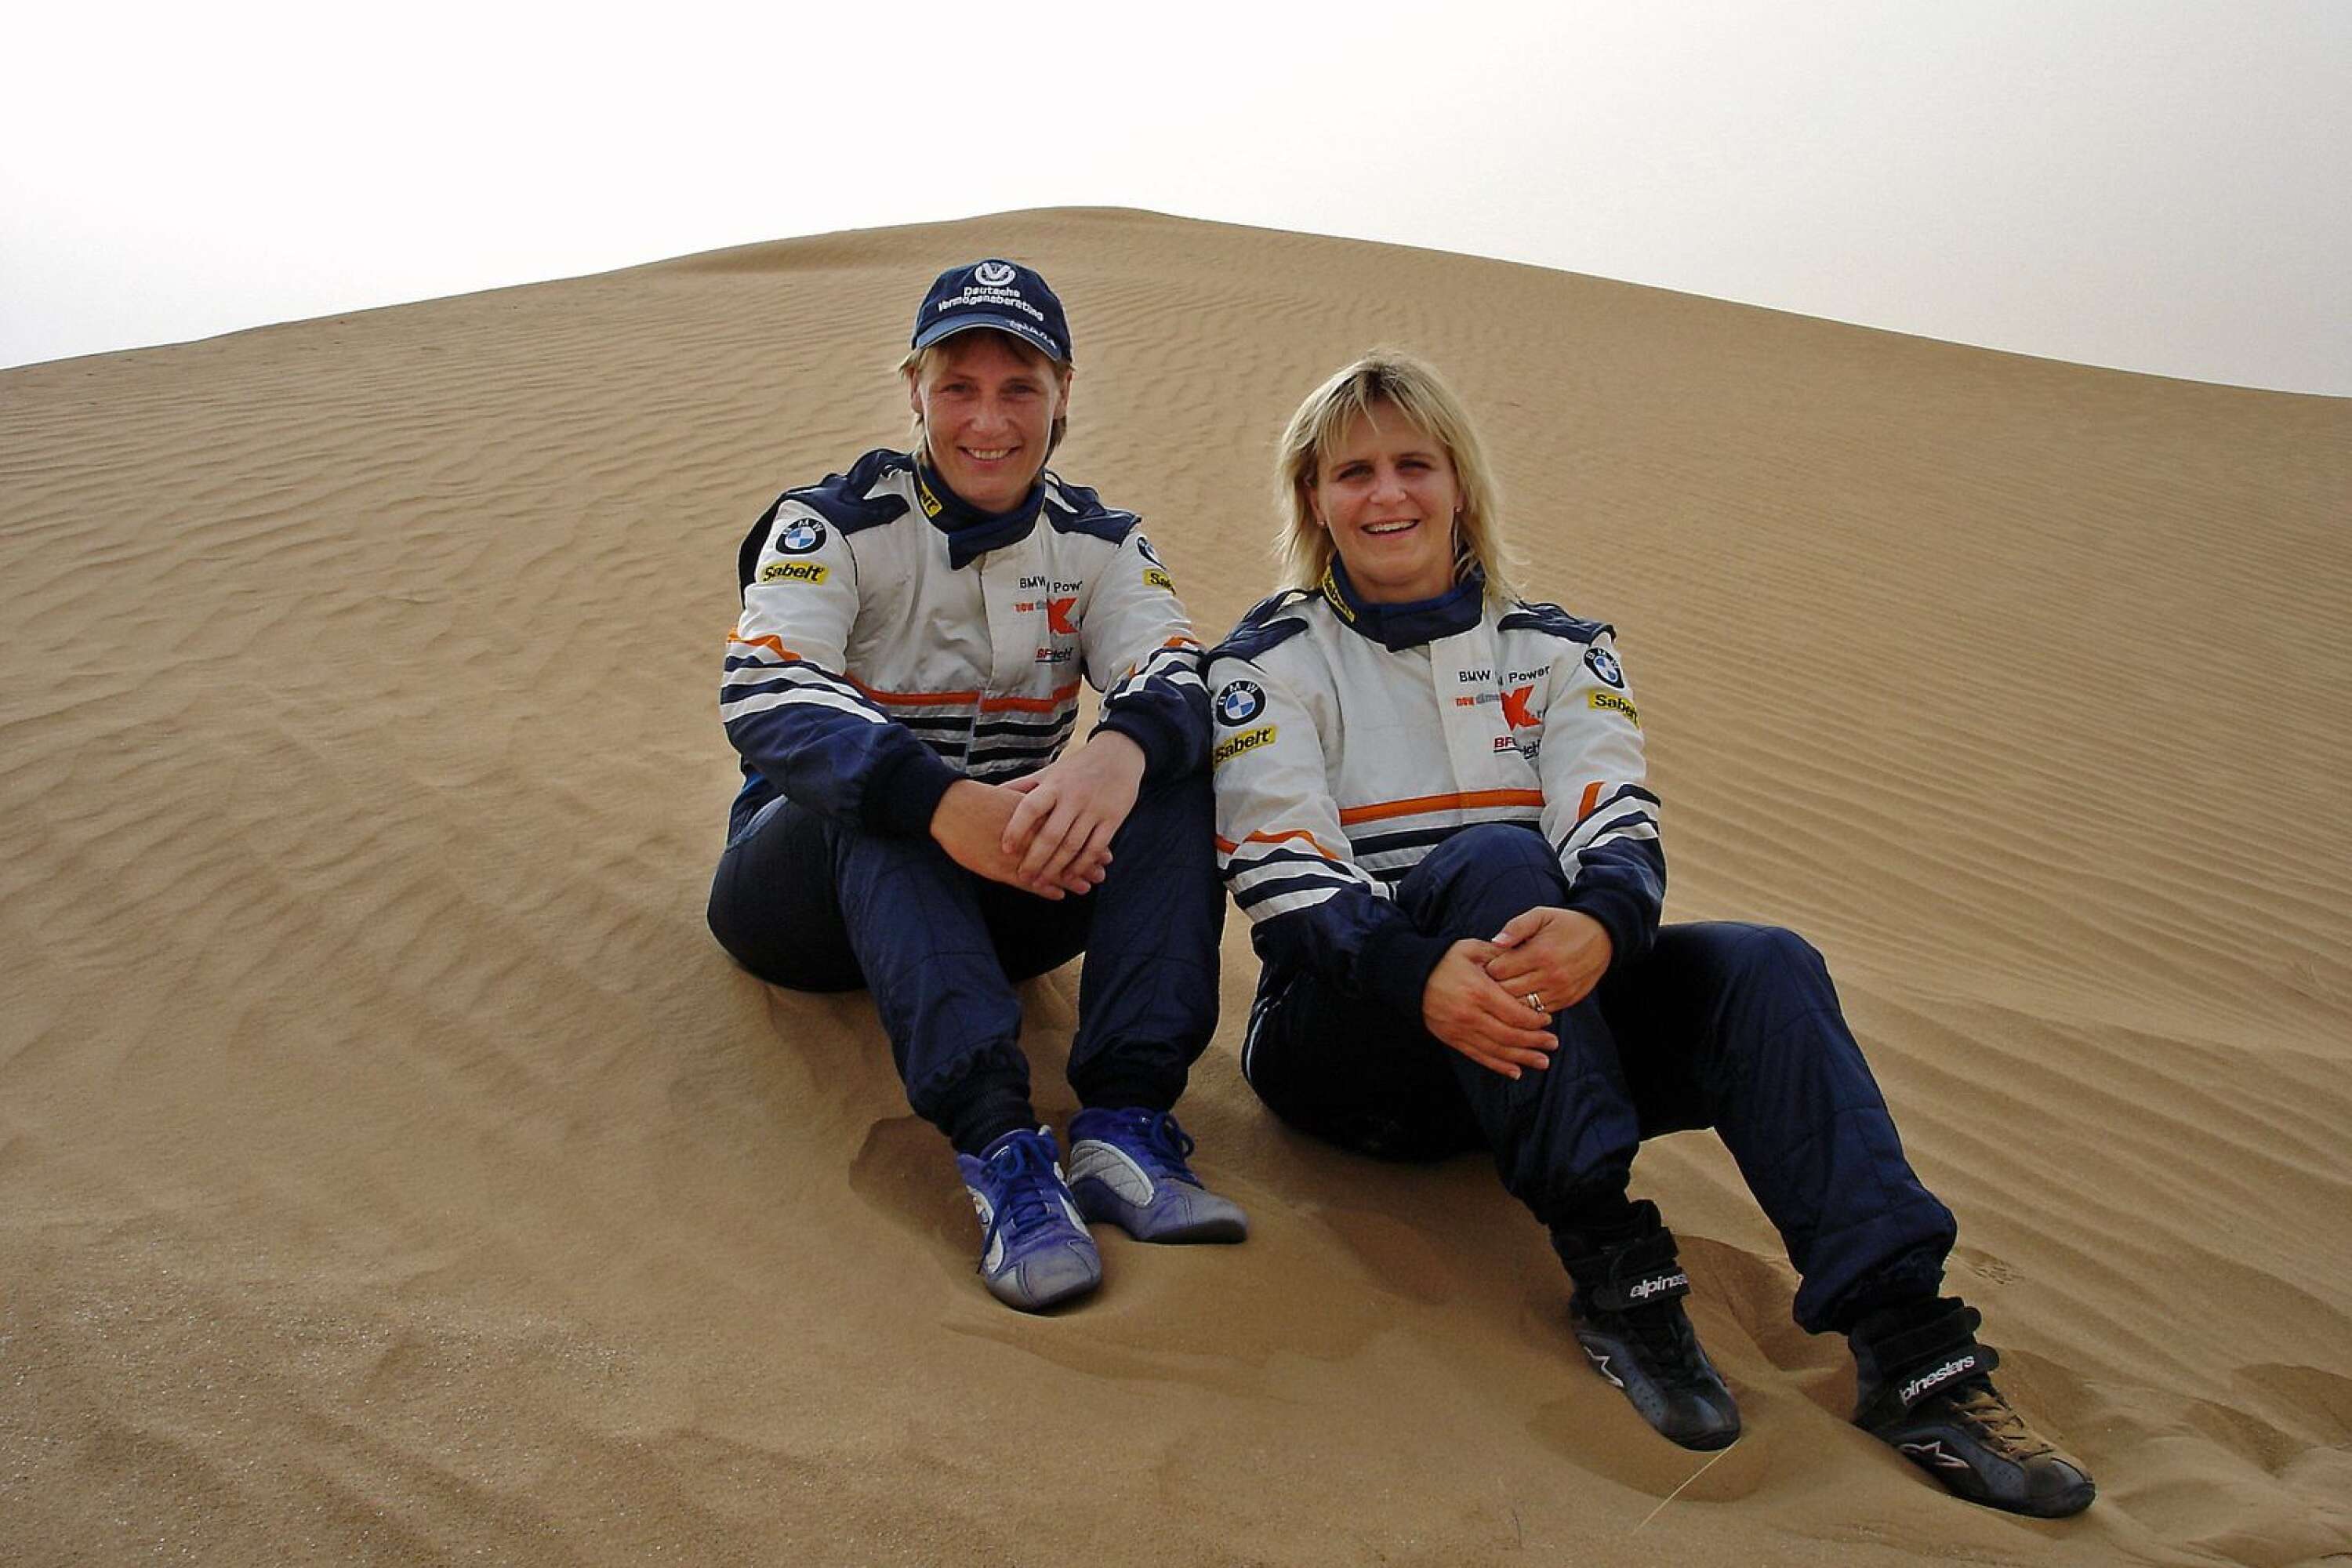 Tina och tyskan Jutta Kleinschmidt har blivit trea tillsammans i Dakarrallyt. Det kan bli en återförening med sikte på seger.